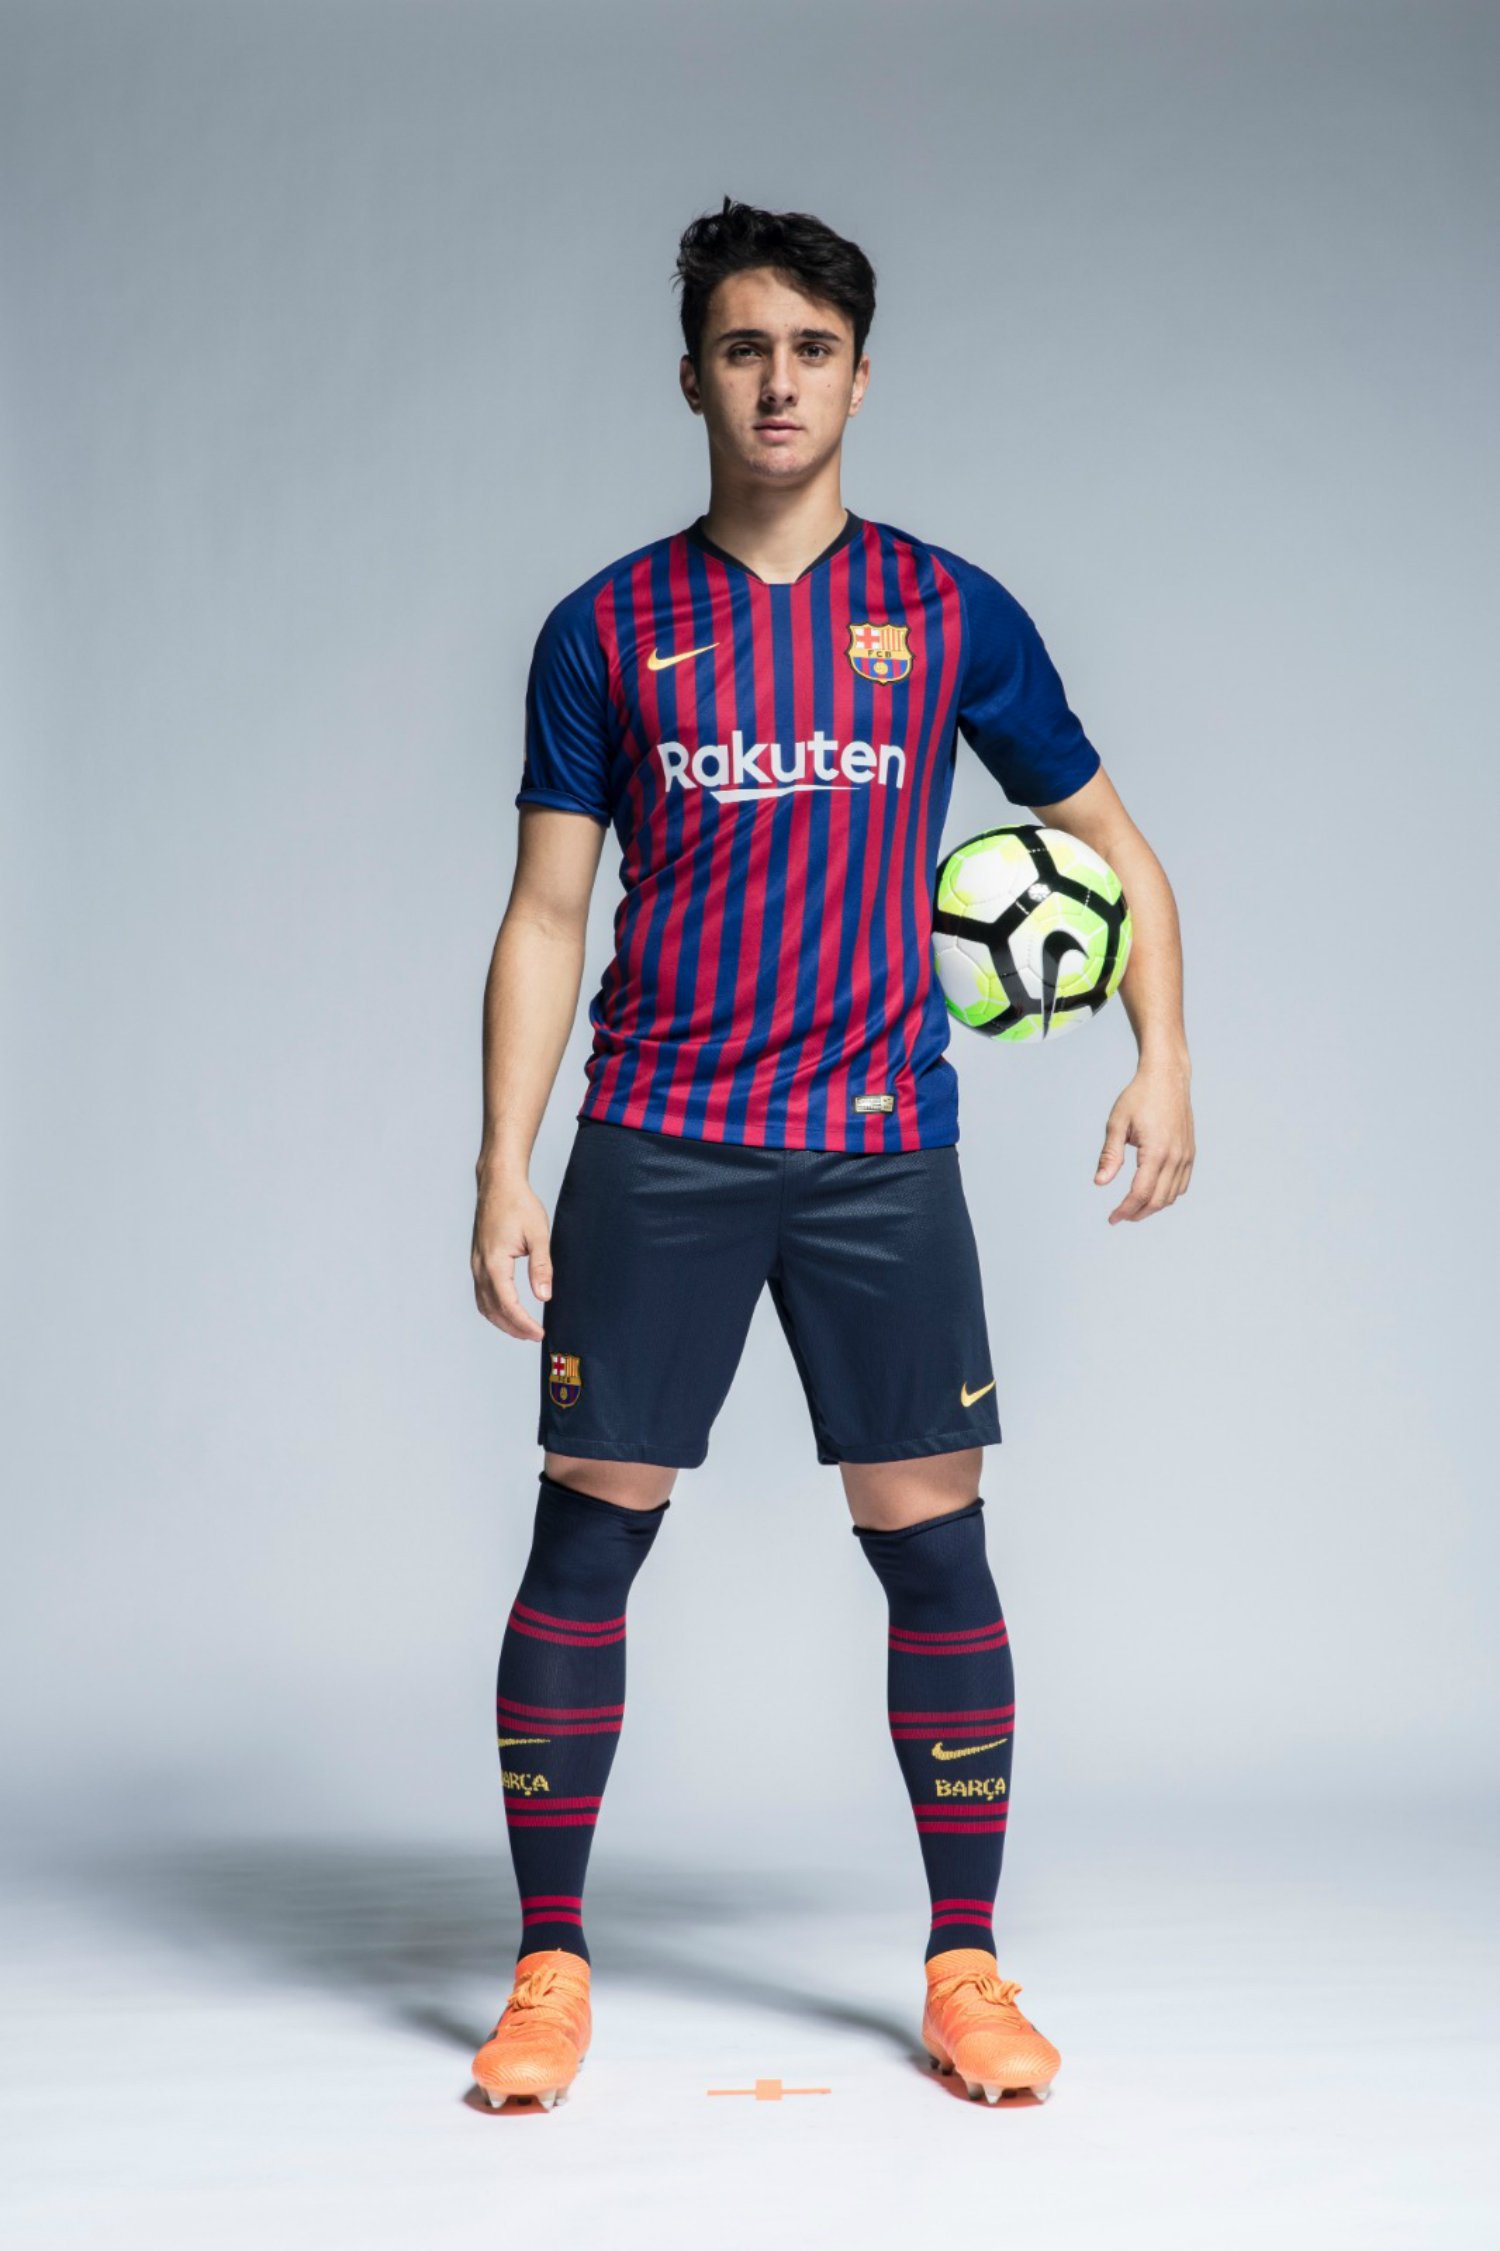 El sueño de Ignasi Vilarrasa, el nuevo fichaje del Barça, para 2019